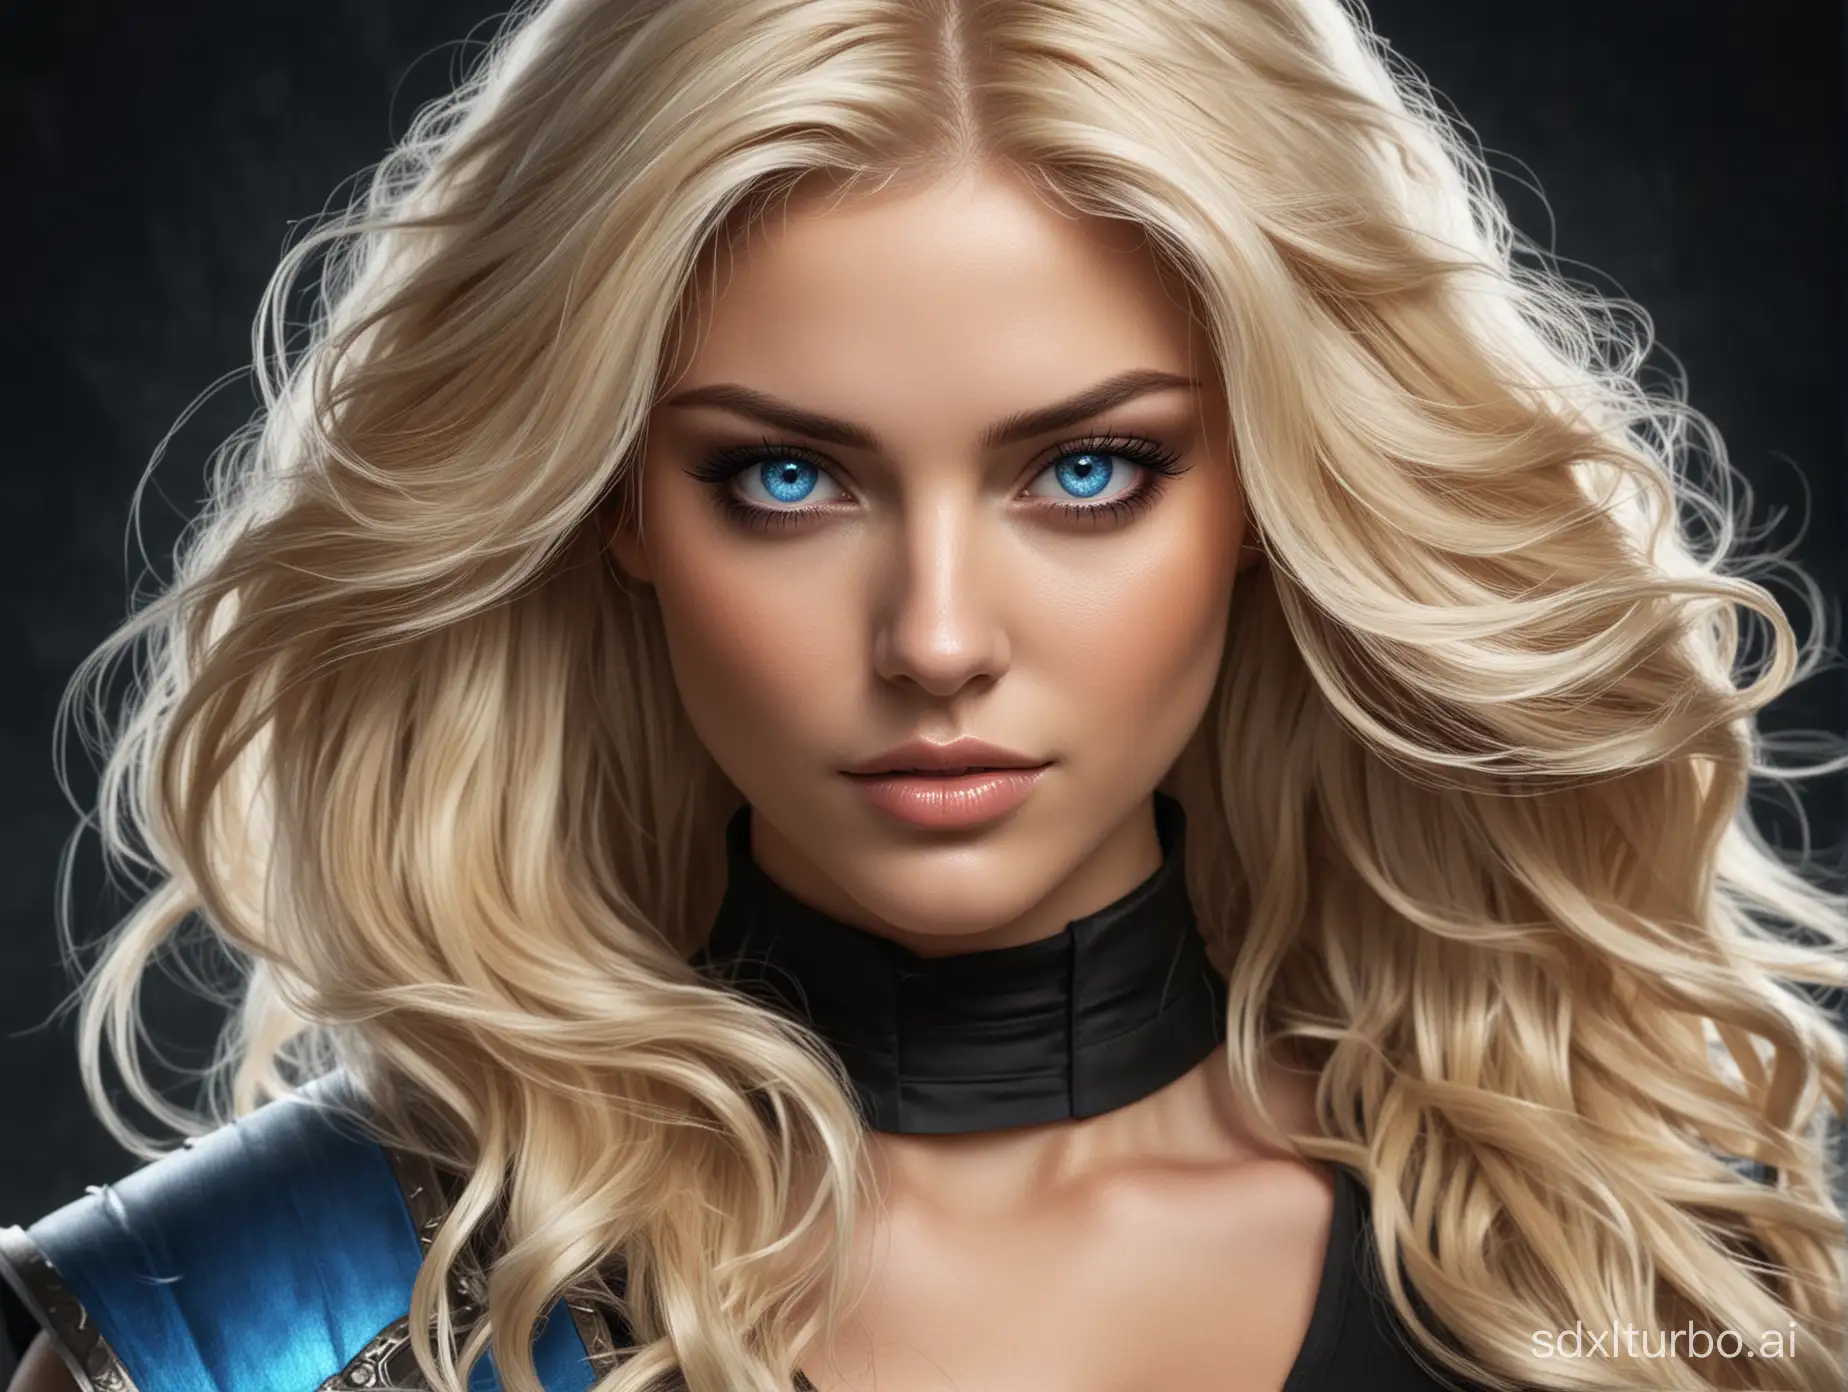 блондинка с длинными волнистыми волосами, синими глазами в стиле mortal combat